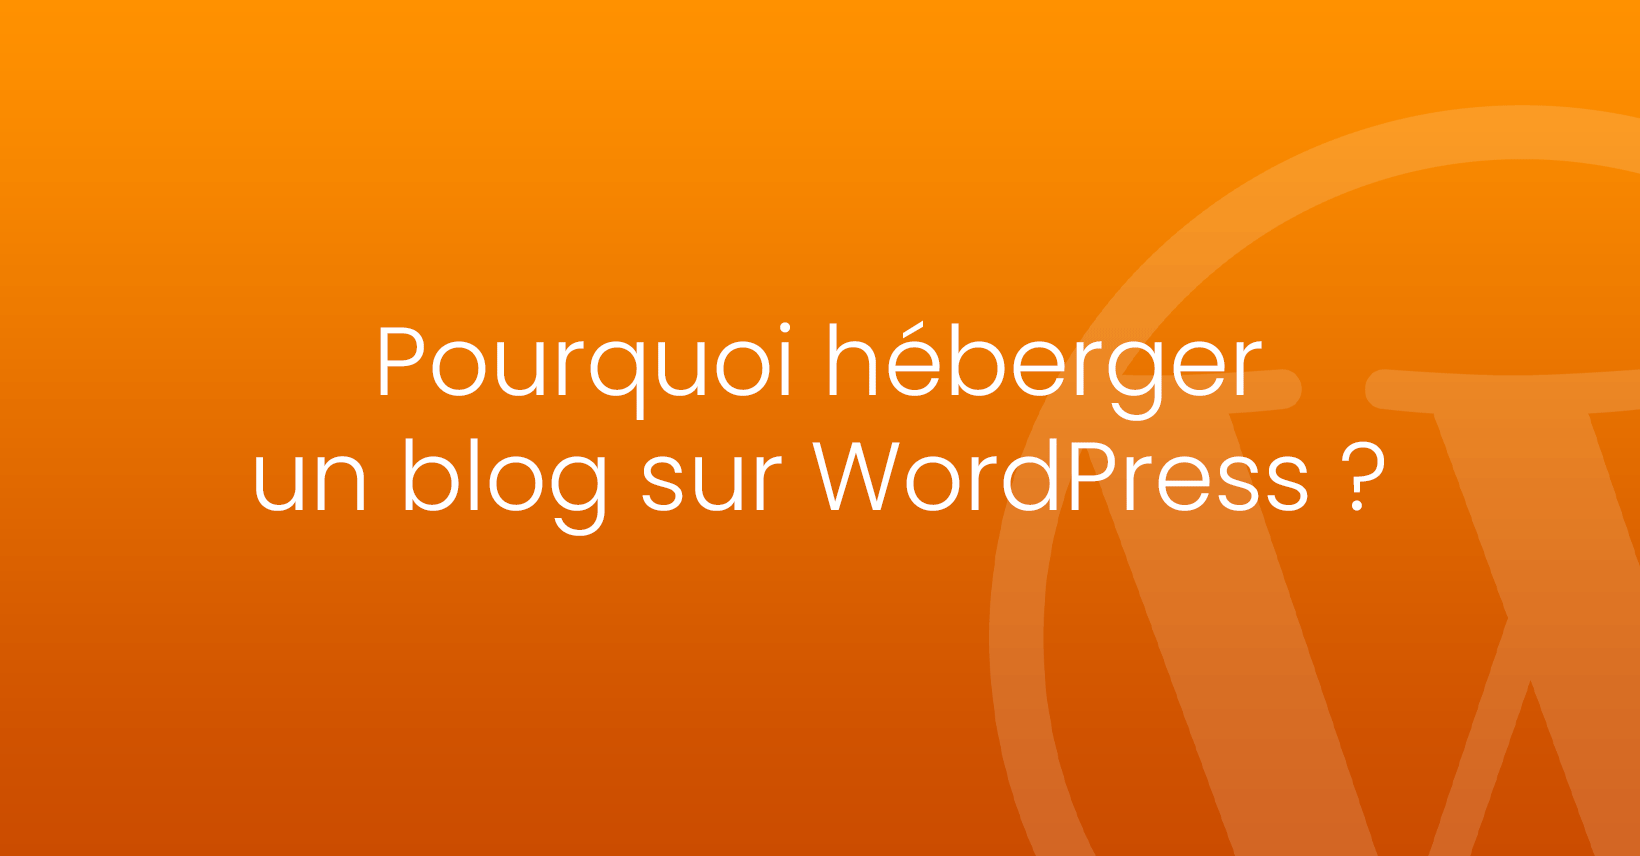 Pourquoi héberger un blog sur WordPress ?